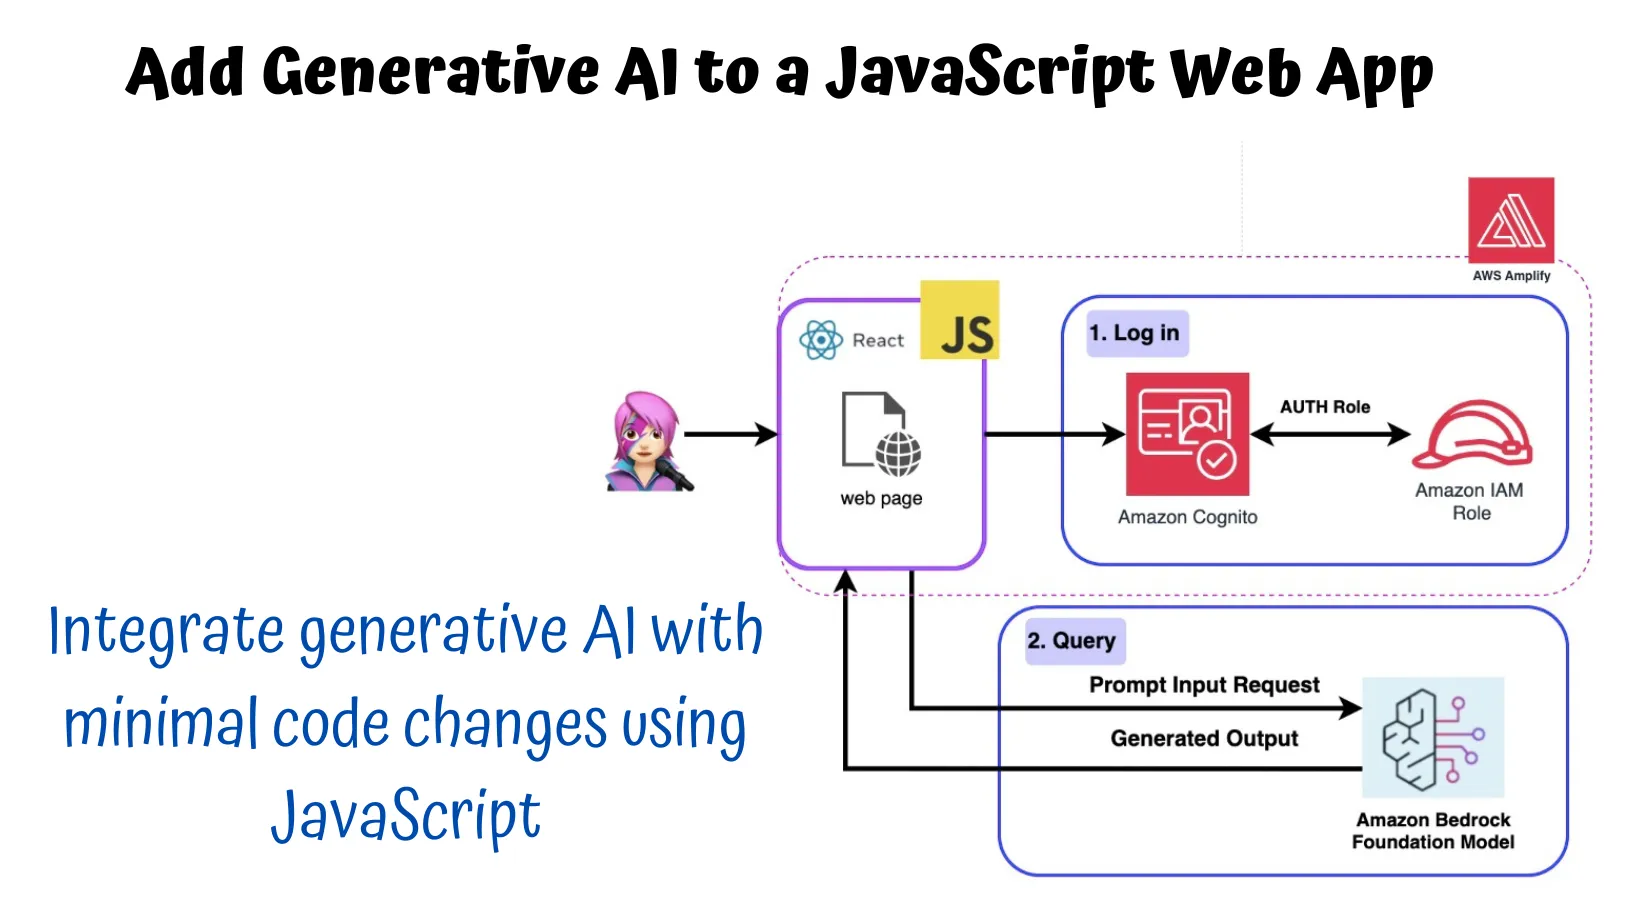 Add Generative AI to a JavaScript Web App